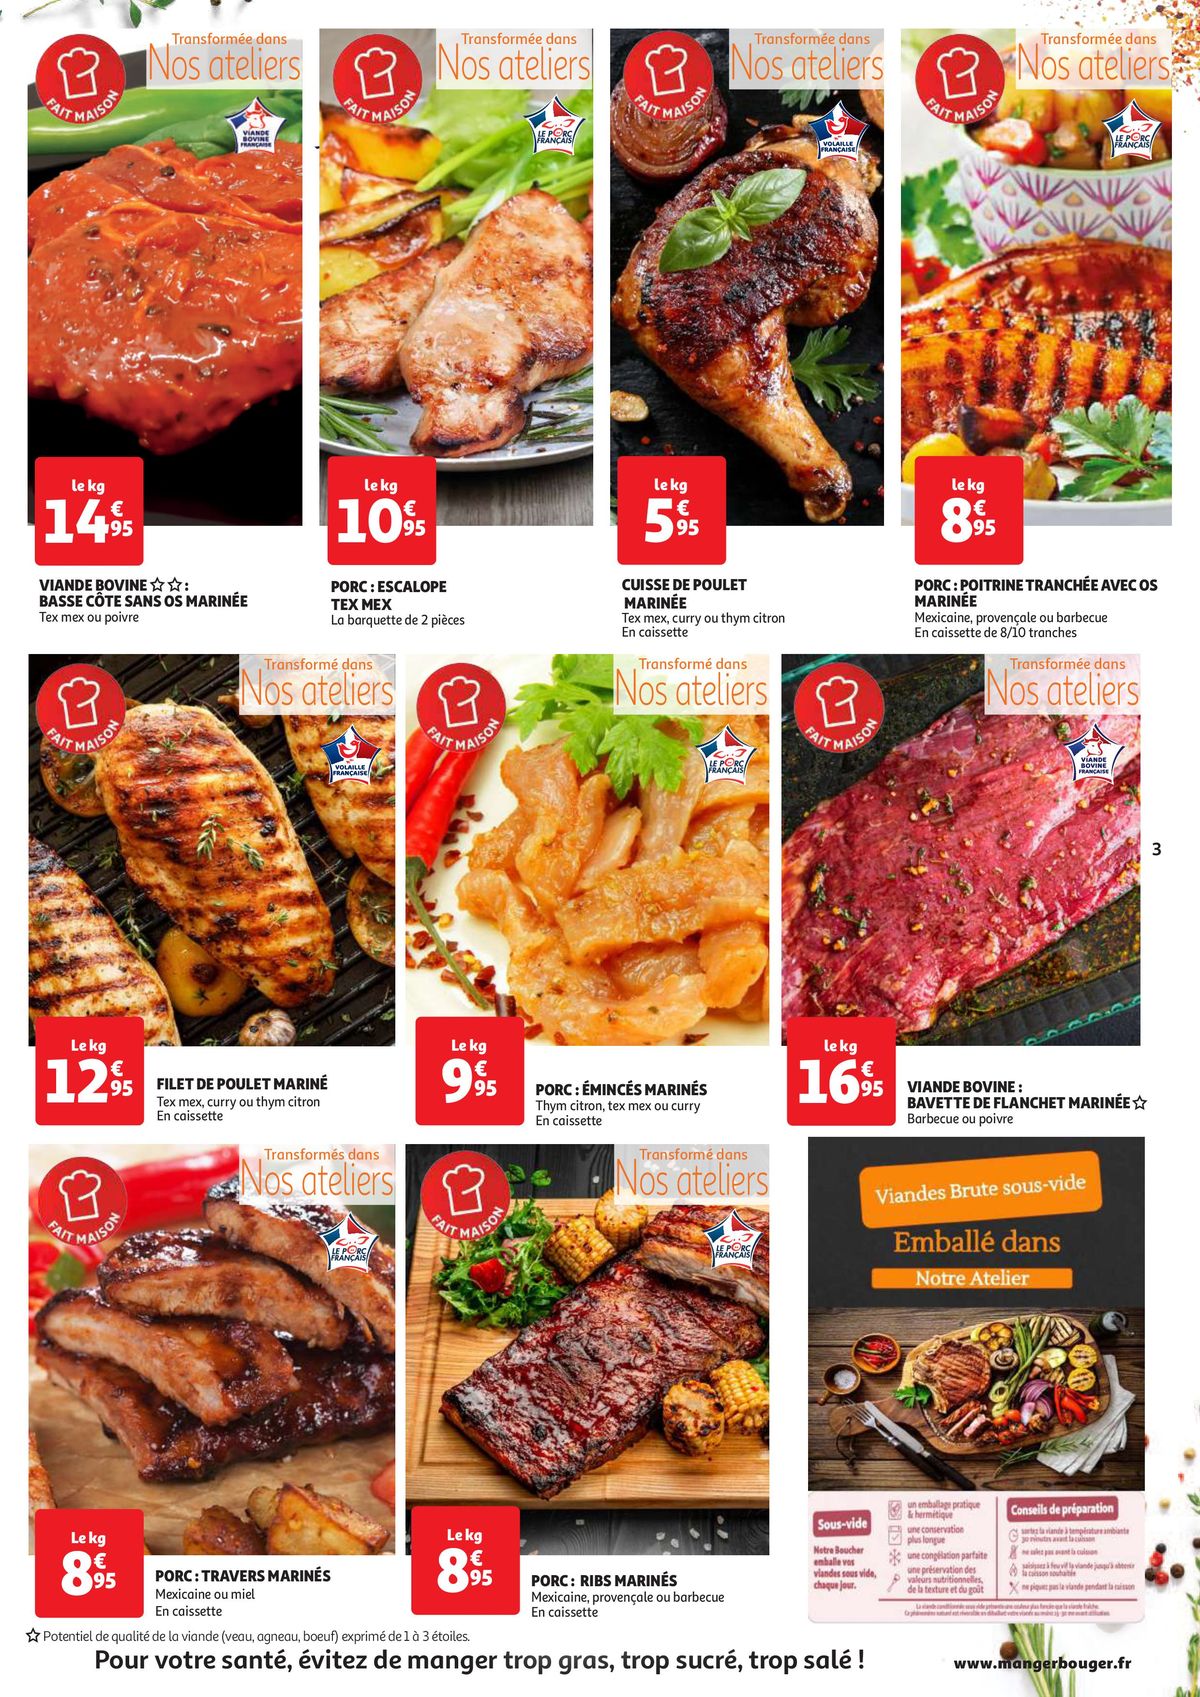 Catalogue Le bon goût des marinades, page 00003